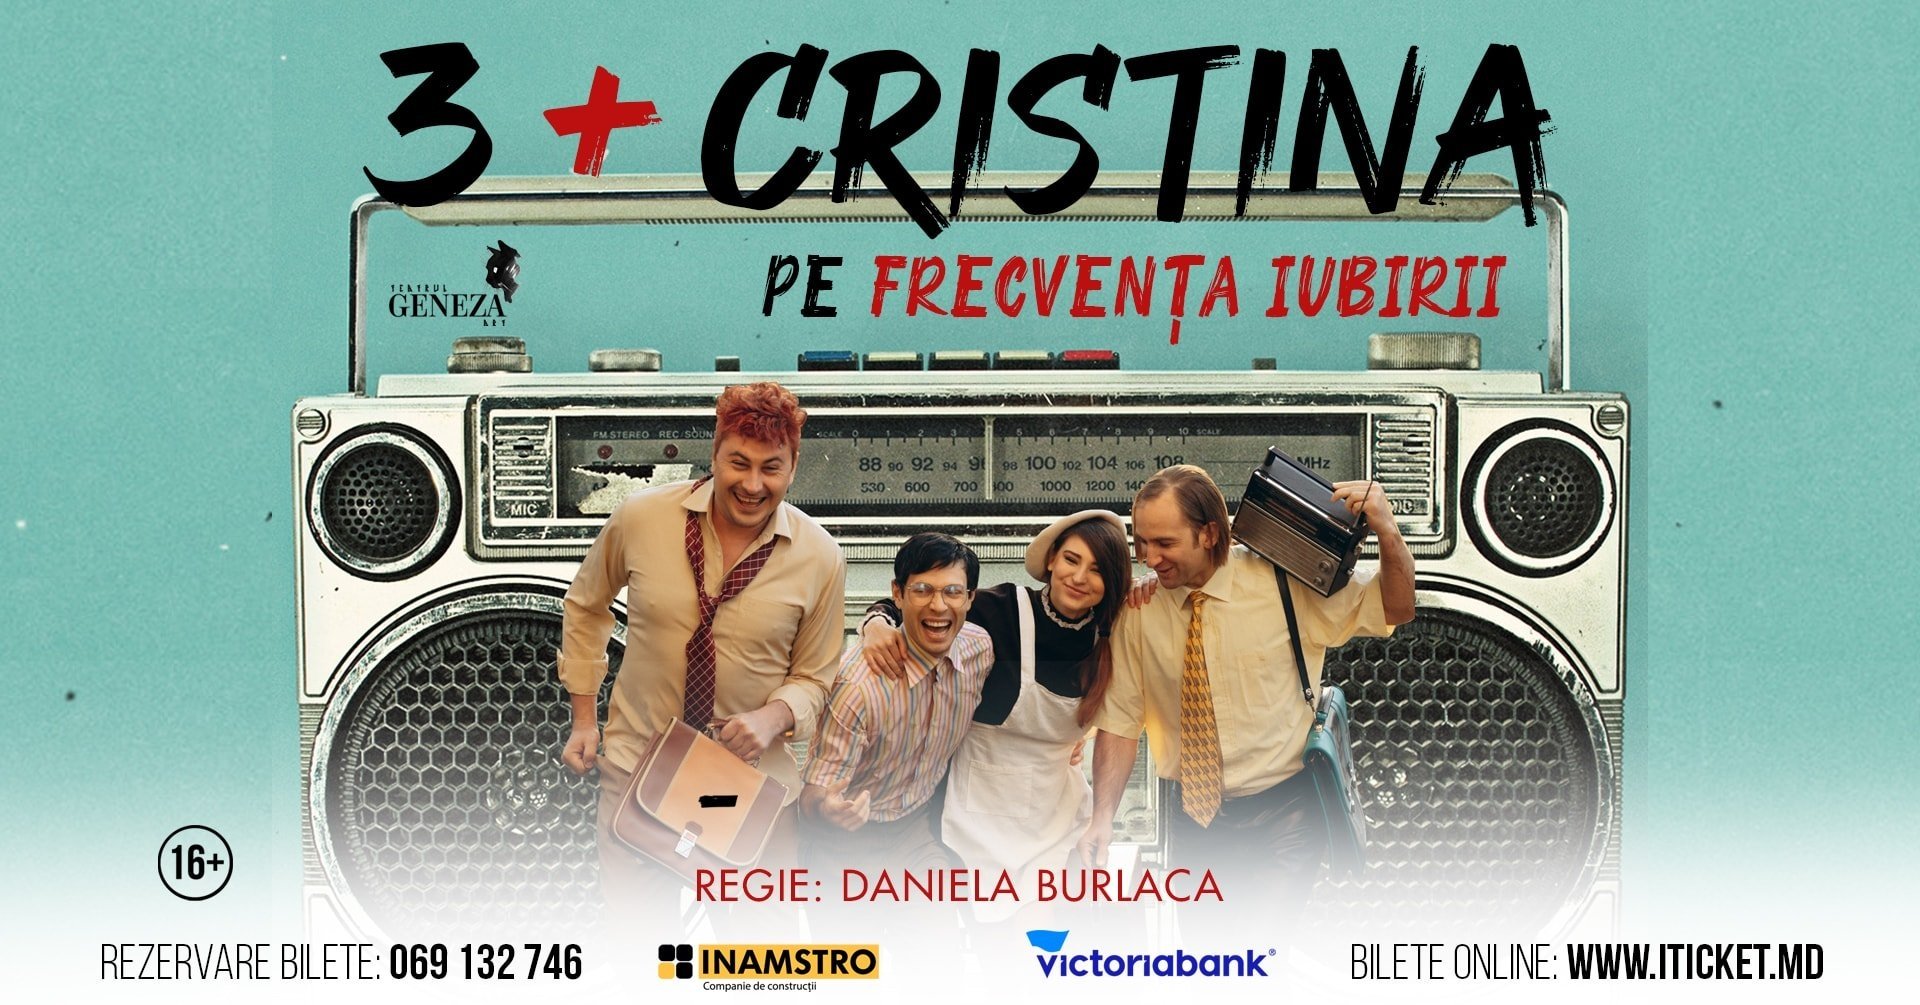  3 + Cristina pe frecvența iubirii premieră